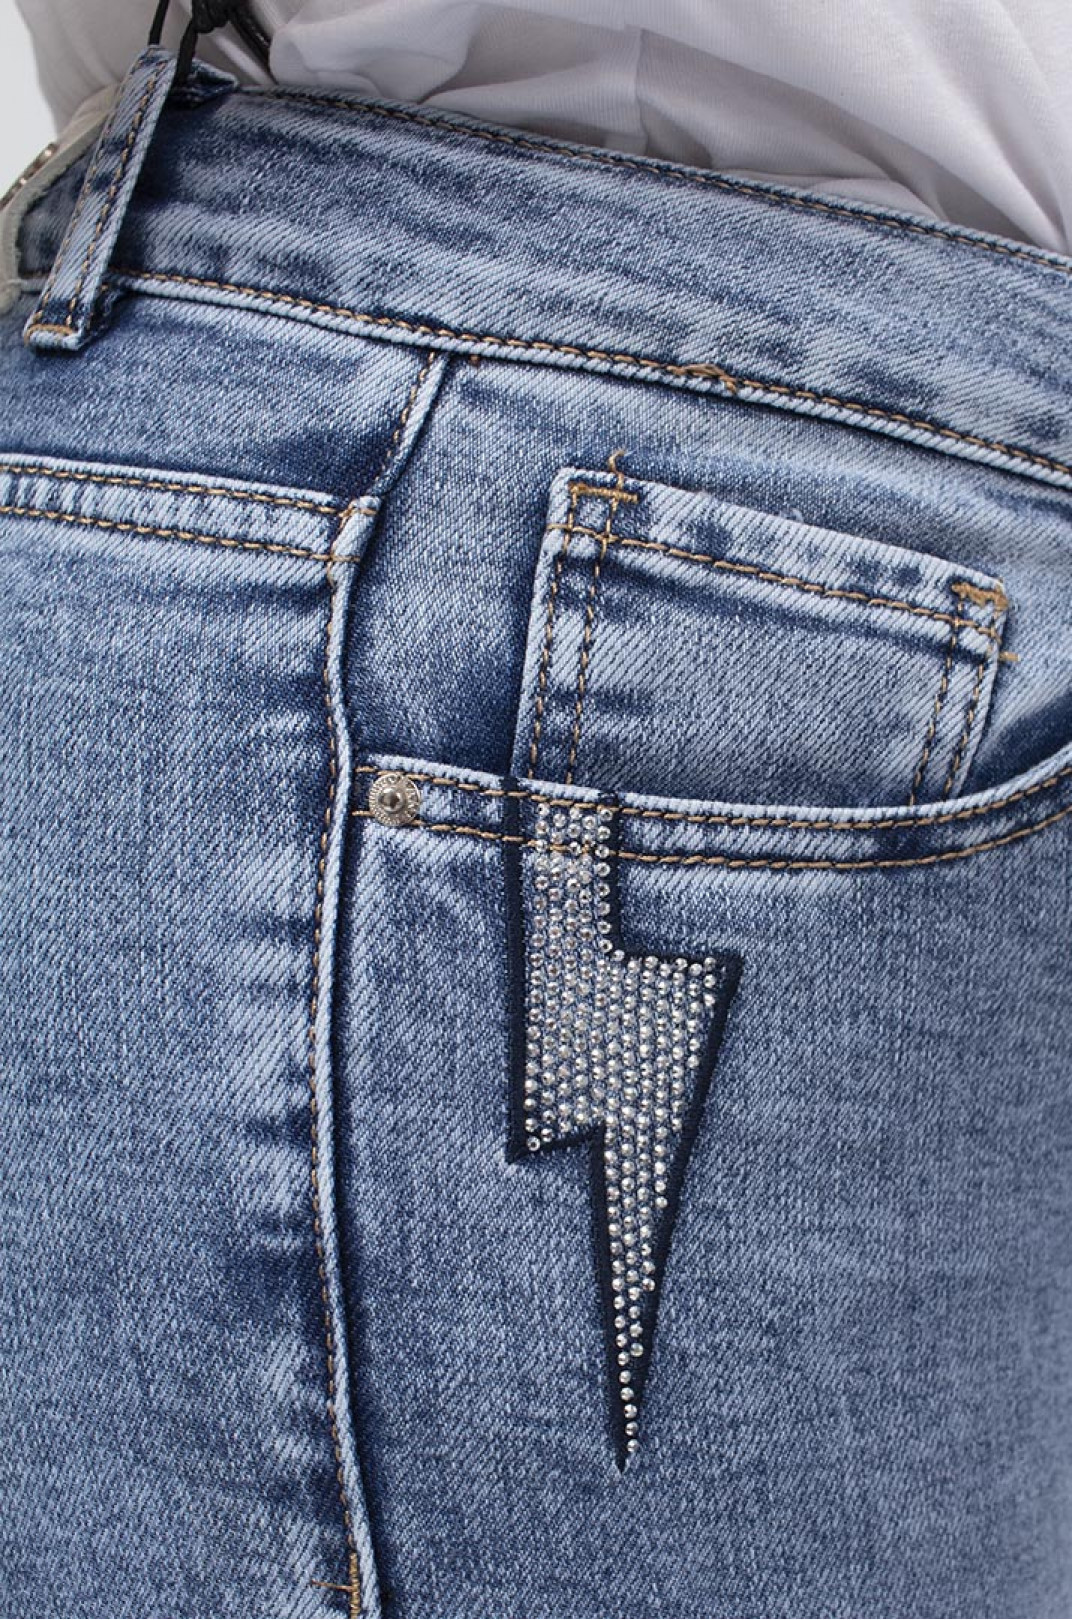 Капри джинсовые с отворотом супер батал